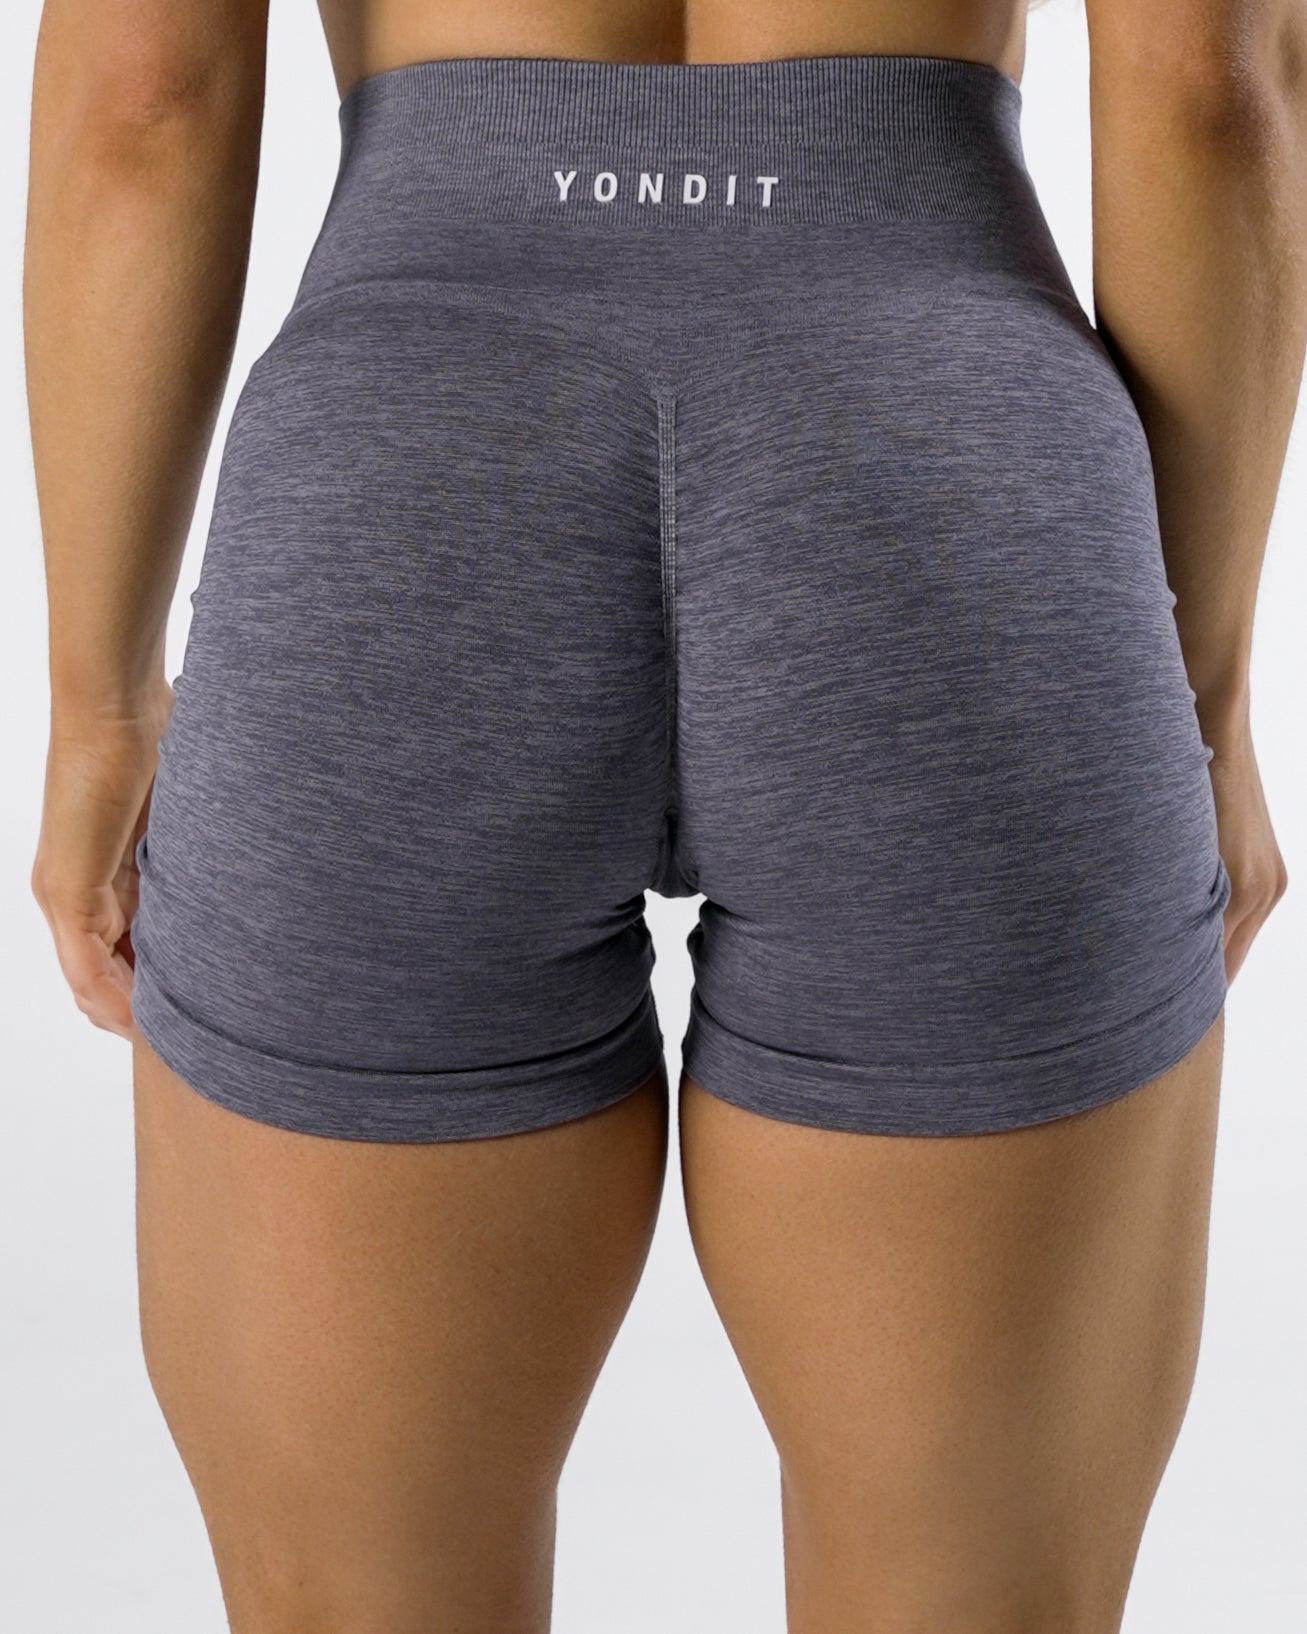 Core Seamless Shorts (Black) - YONDIT